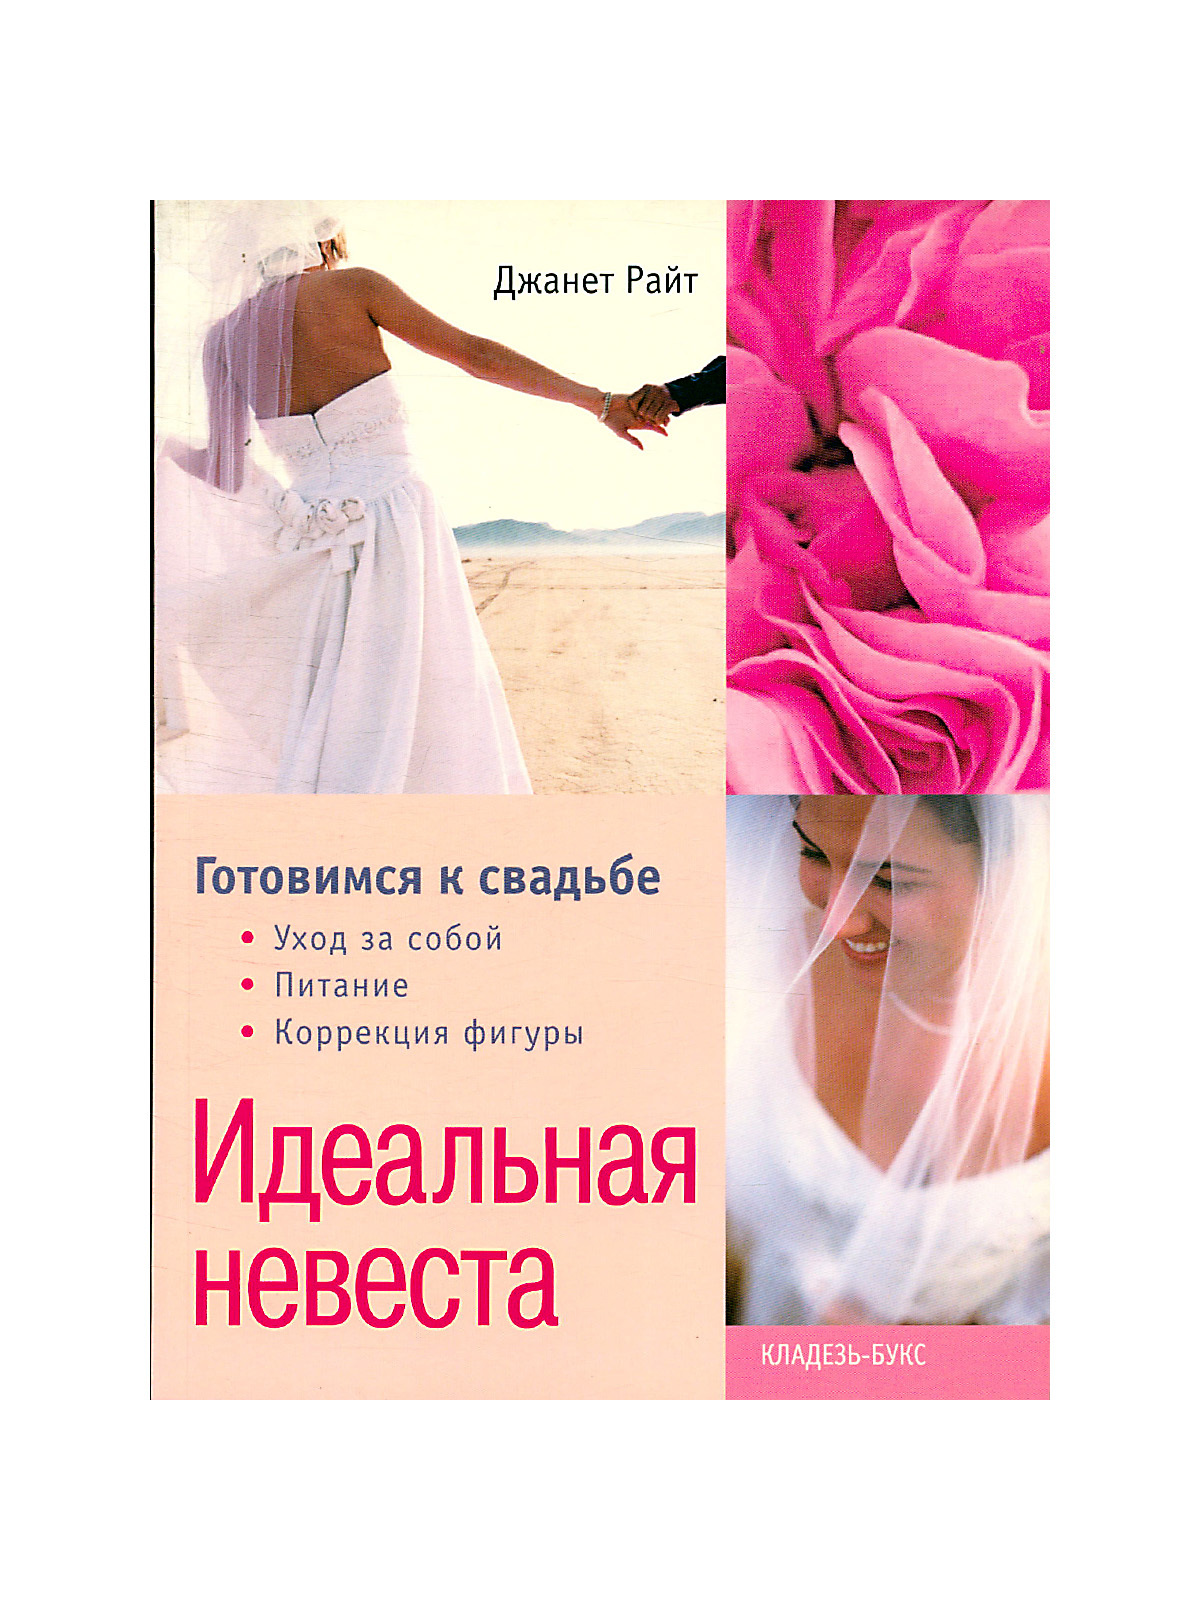 Читать идеальная невеста. Обложка книги Лоуренс Стефани идеальная невеста. Книга идеальная невеста 1996. Книга невинная соблазнительница. Айт Джанетт идеальная невеста.